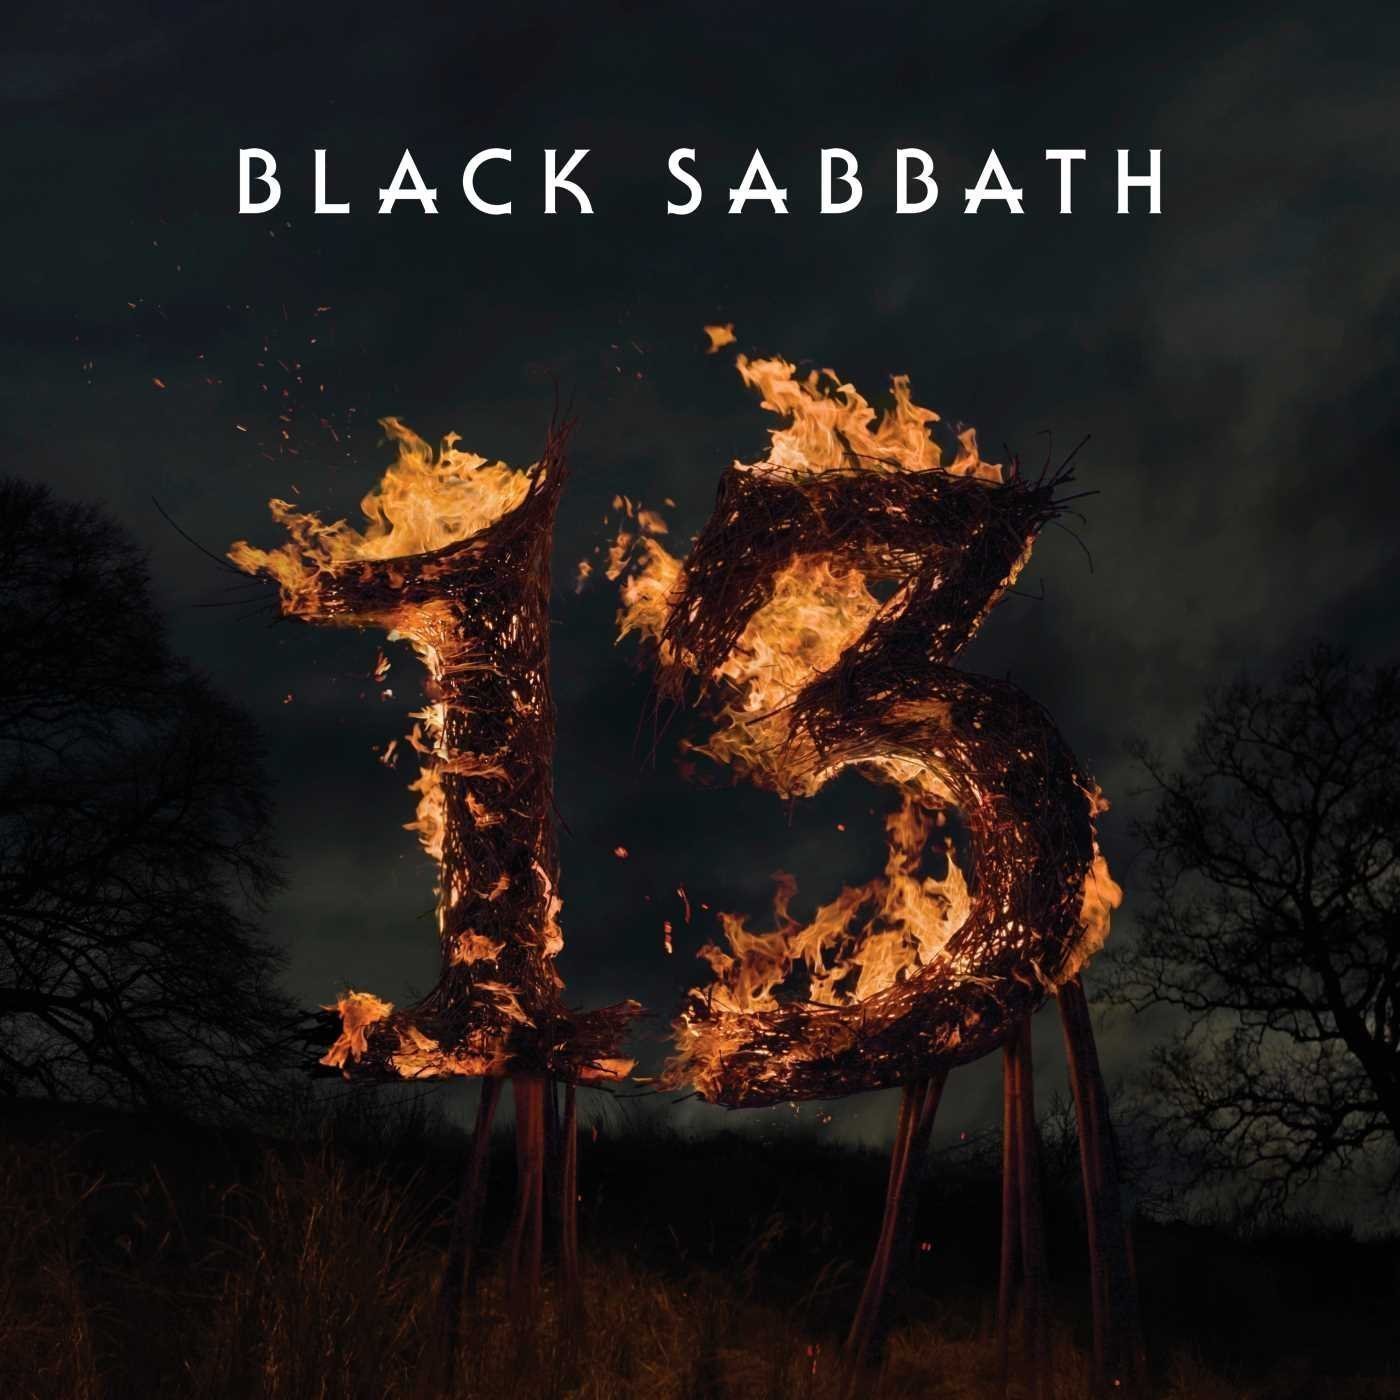 Płyta winylowa Black Sabbath - 13 (2 LP)